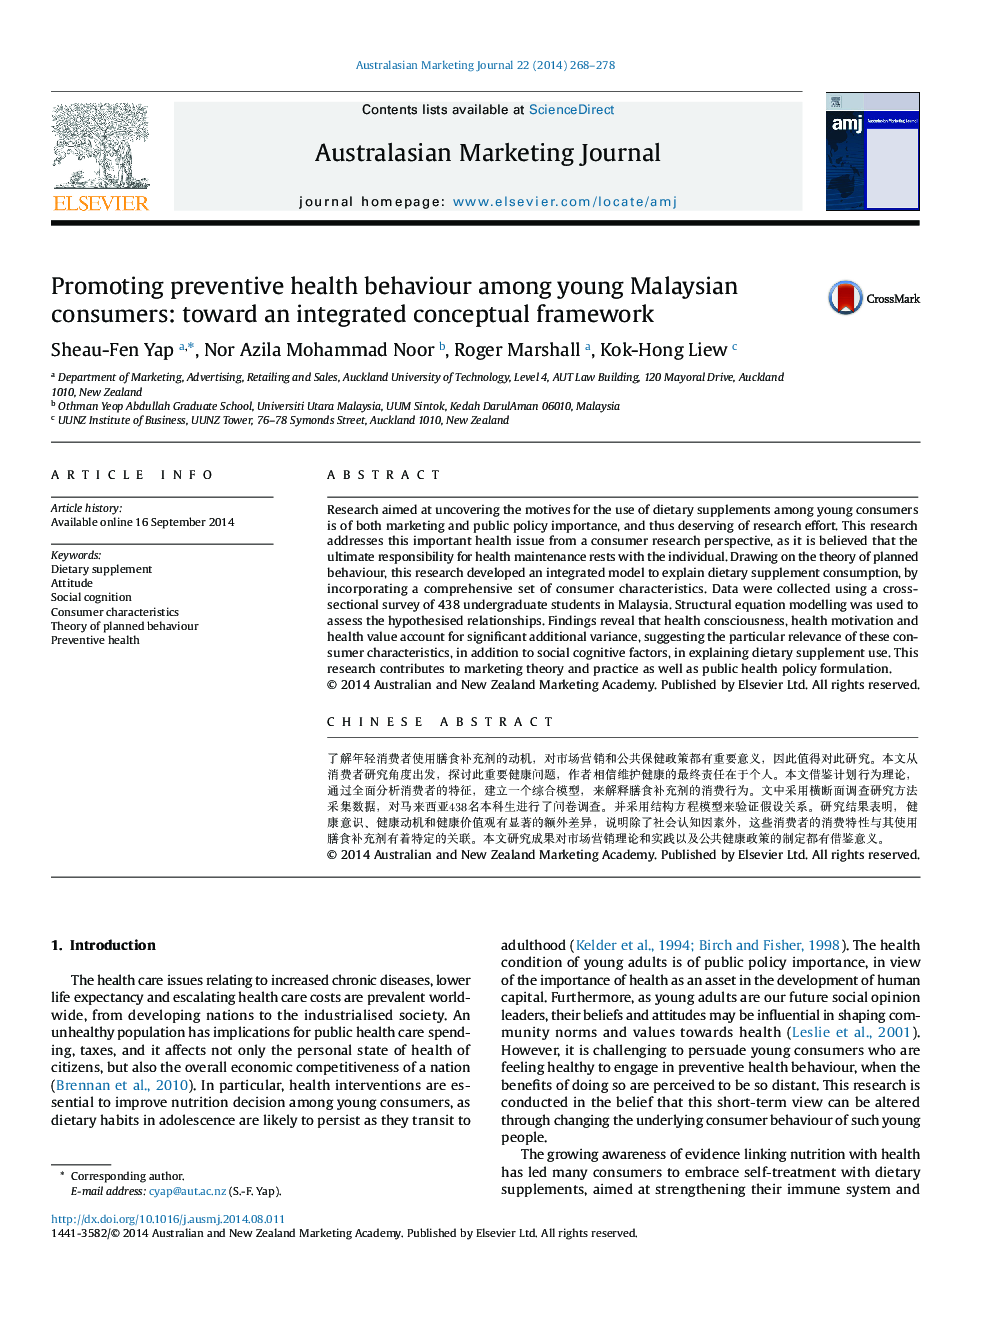 ارتقاء رفتار سلامت پیشگیرانه در میان مصرف کنندگان مالزی جوان: به سمت یک چارچوب مفهومی یکپارچه 